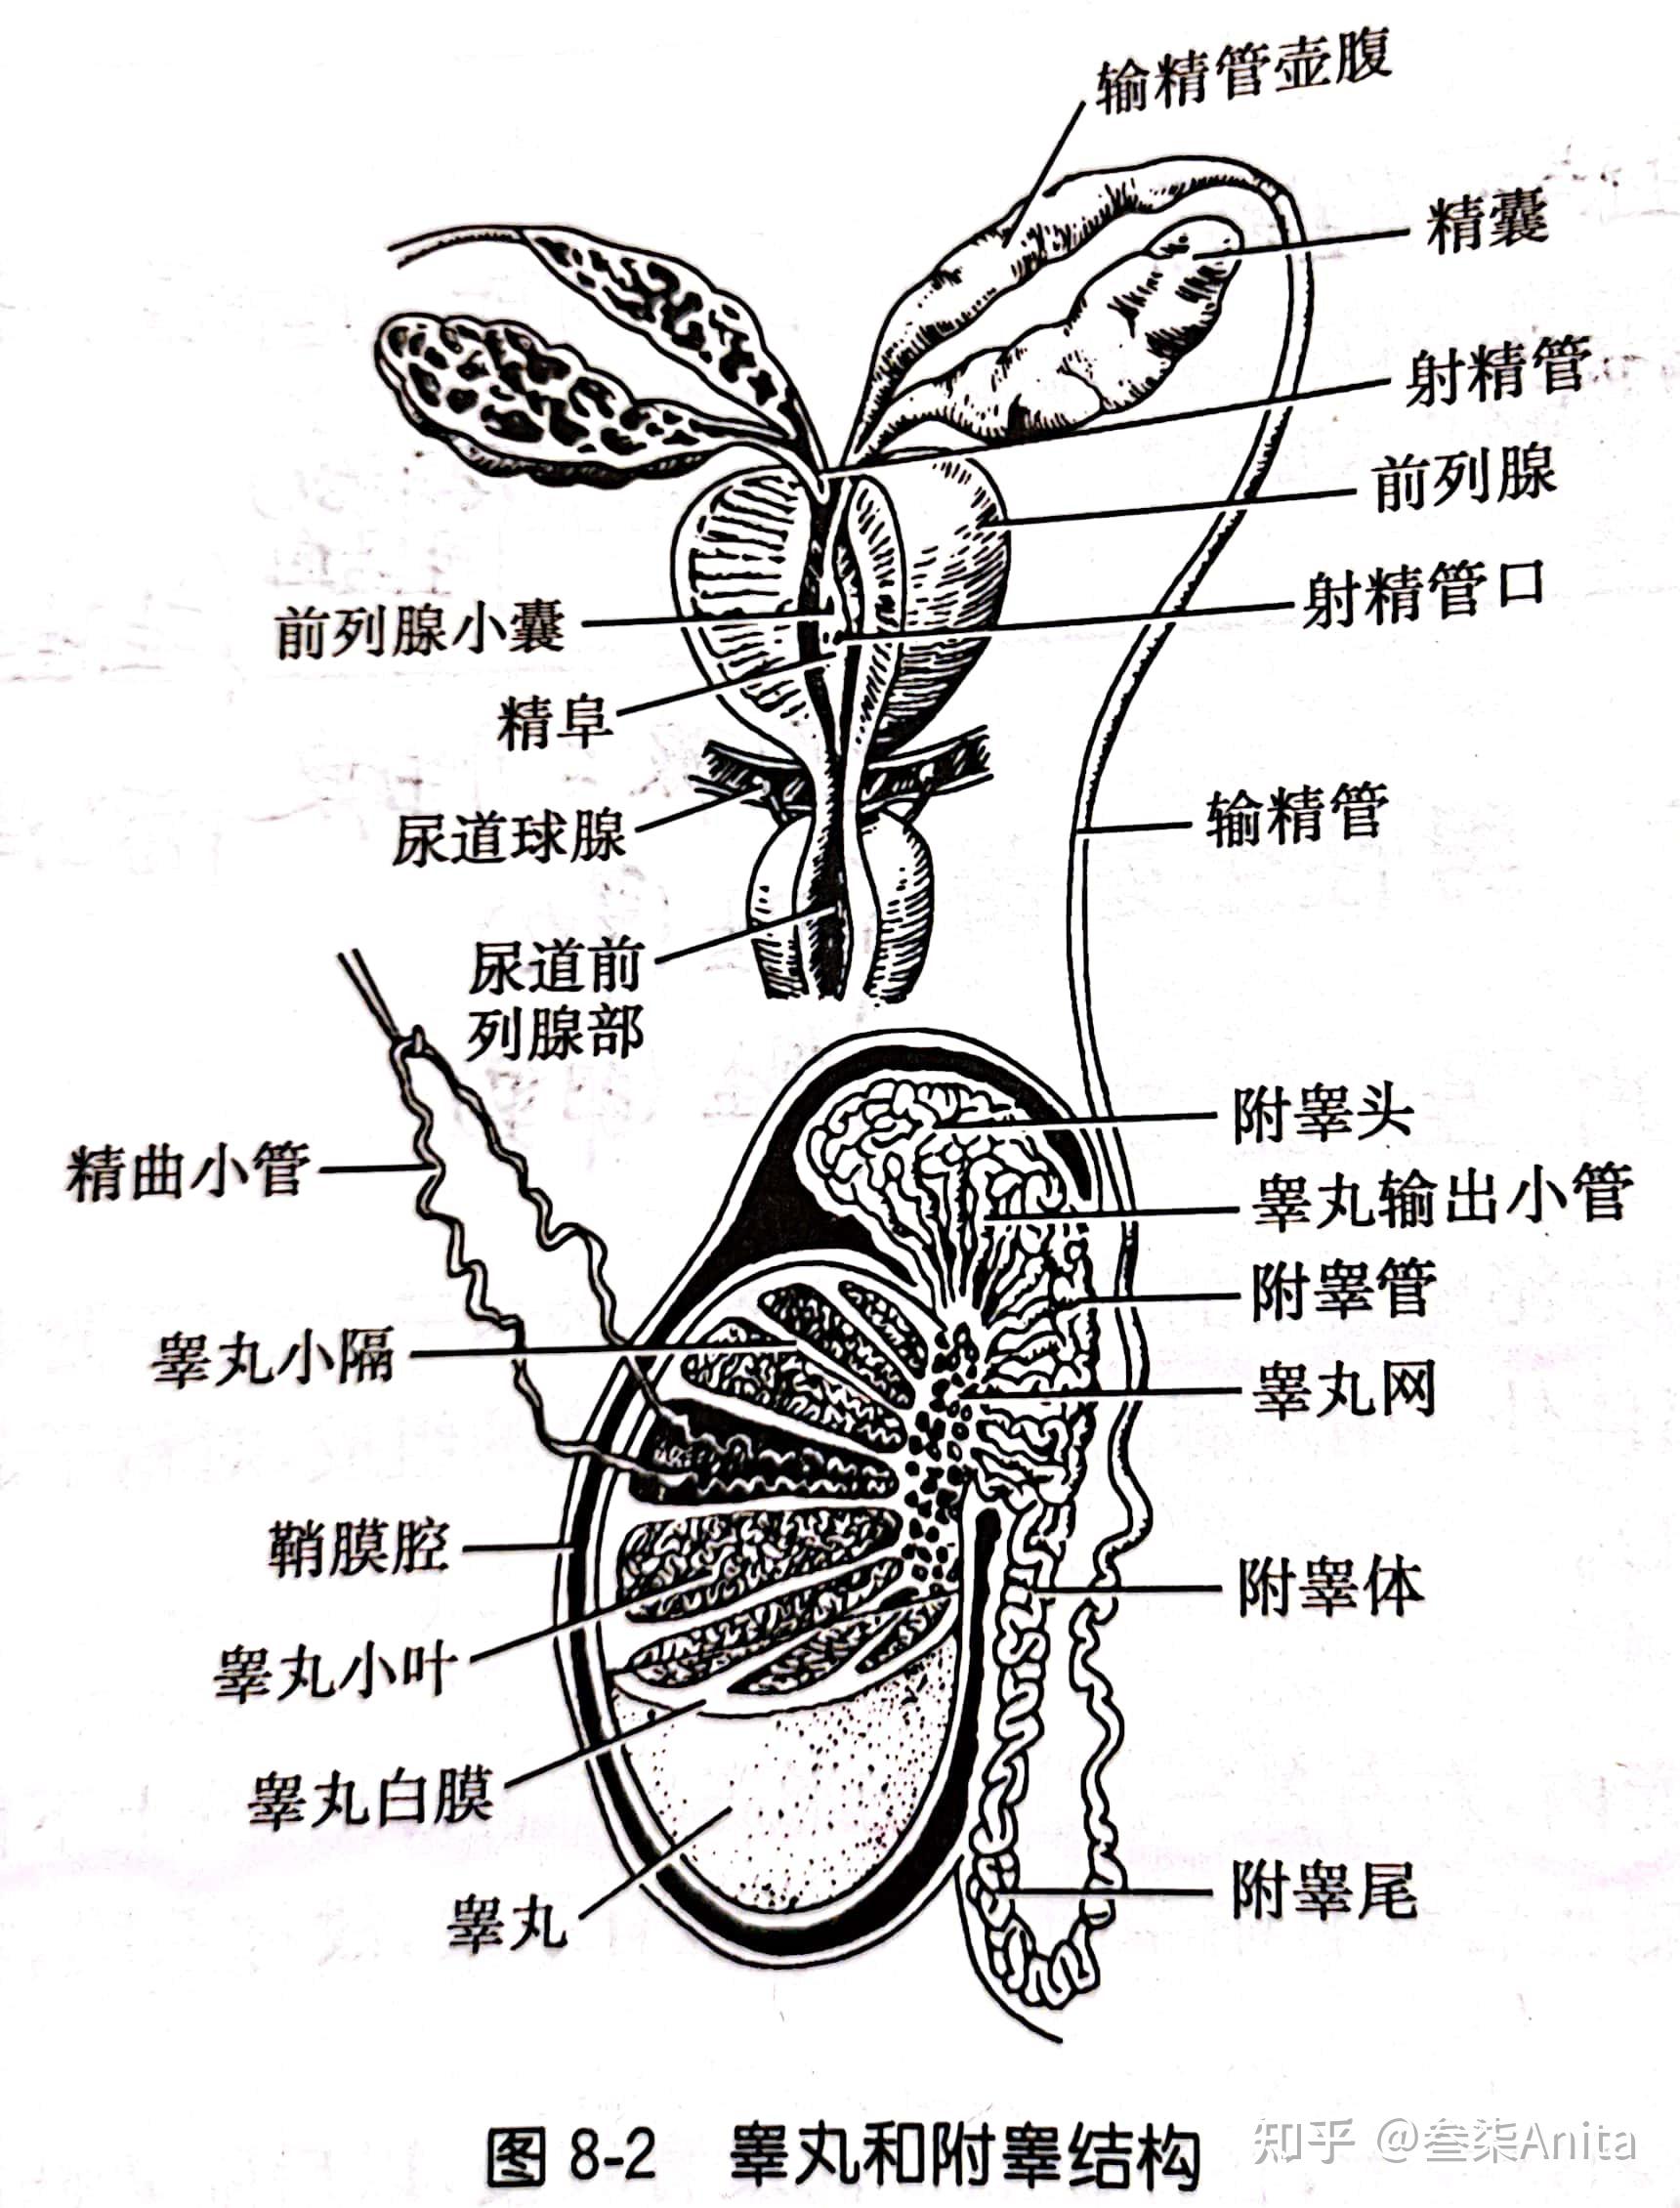 睾丸,附睾及输精管的初始部分在侧视图中衍生种子的过程下垂部分的